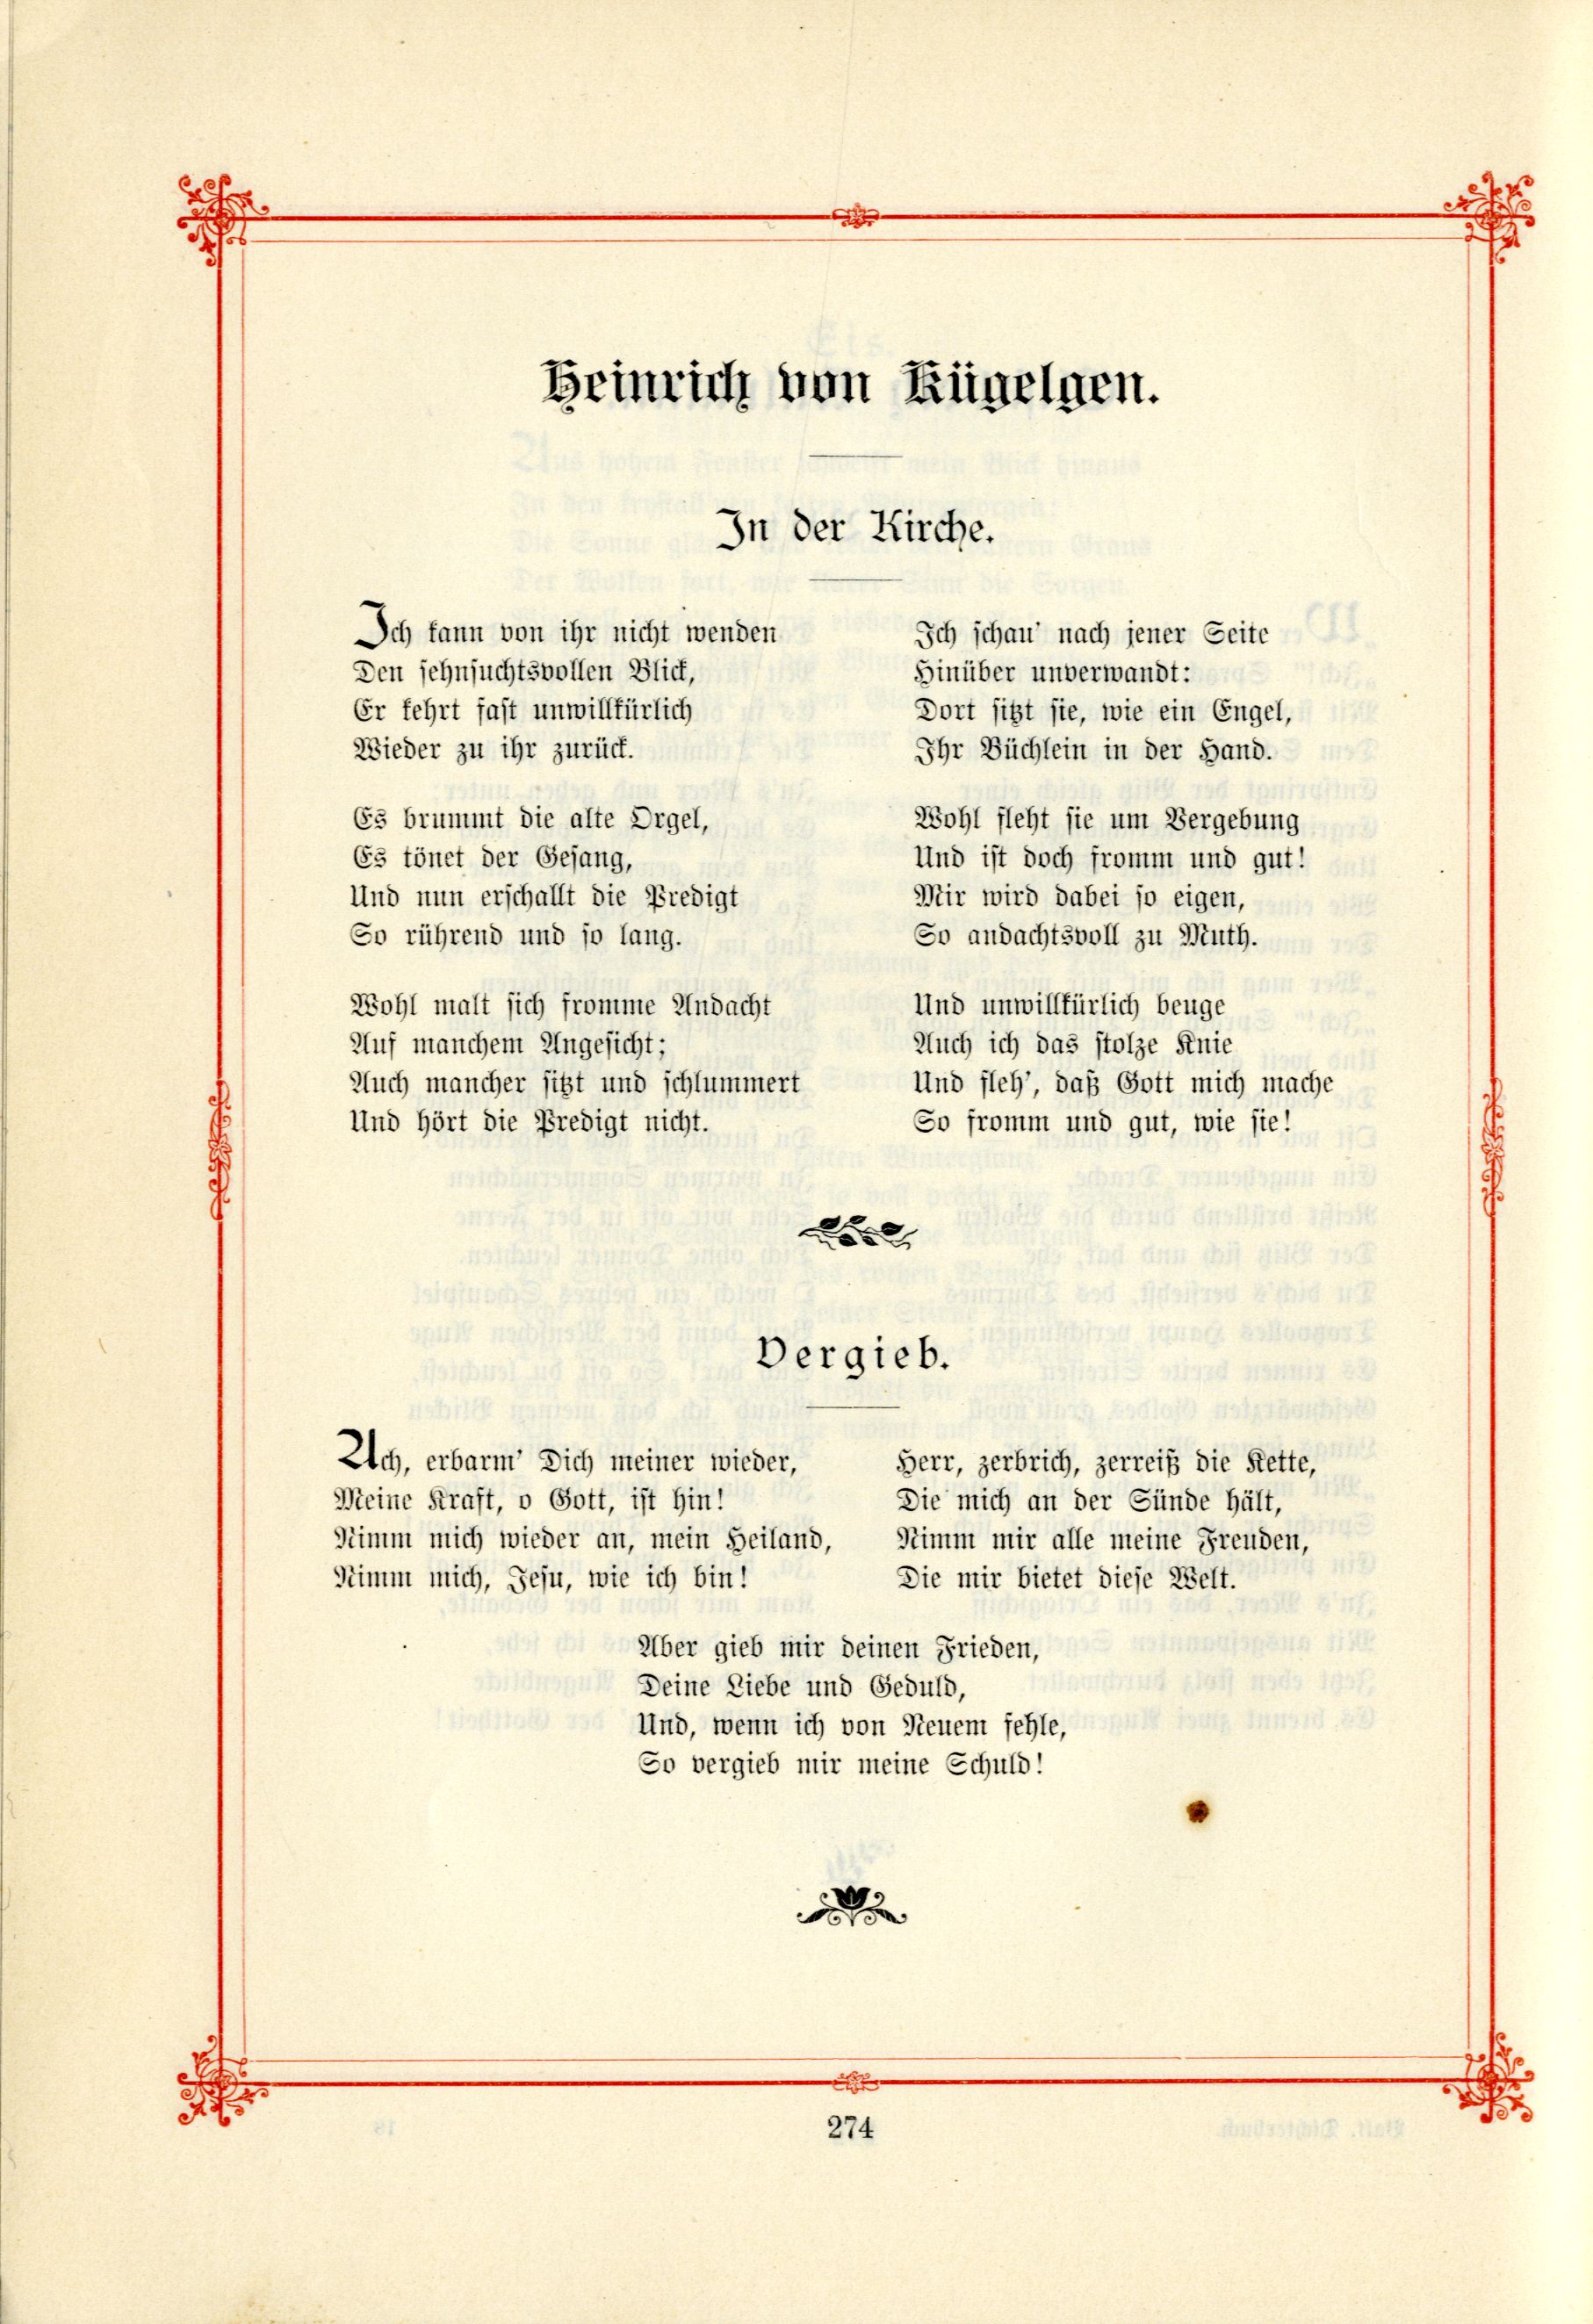 Das Baltische Dichterbuch (1895) | 320. (274) Main body of text